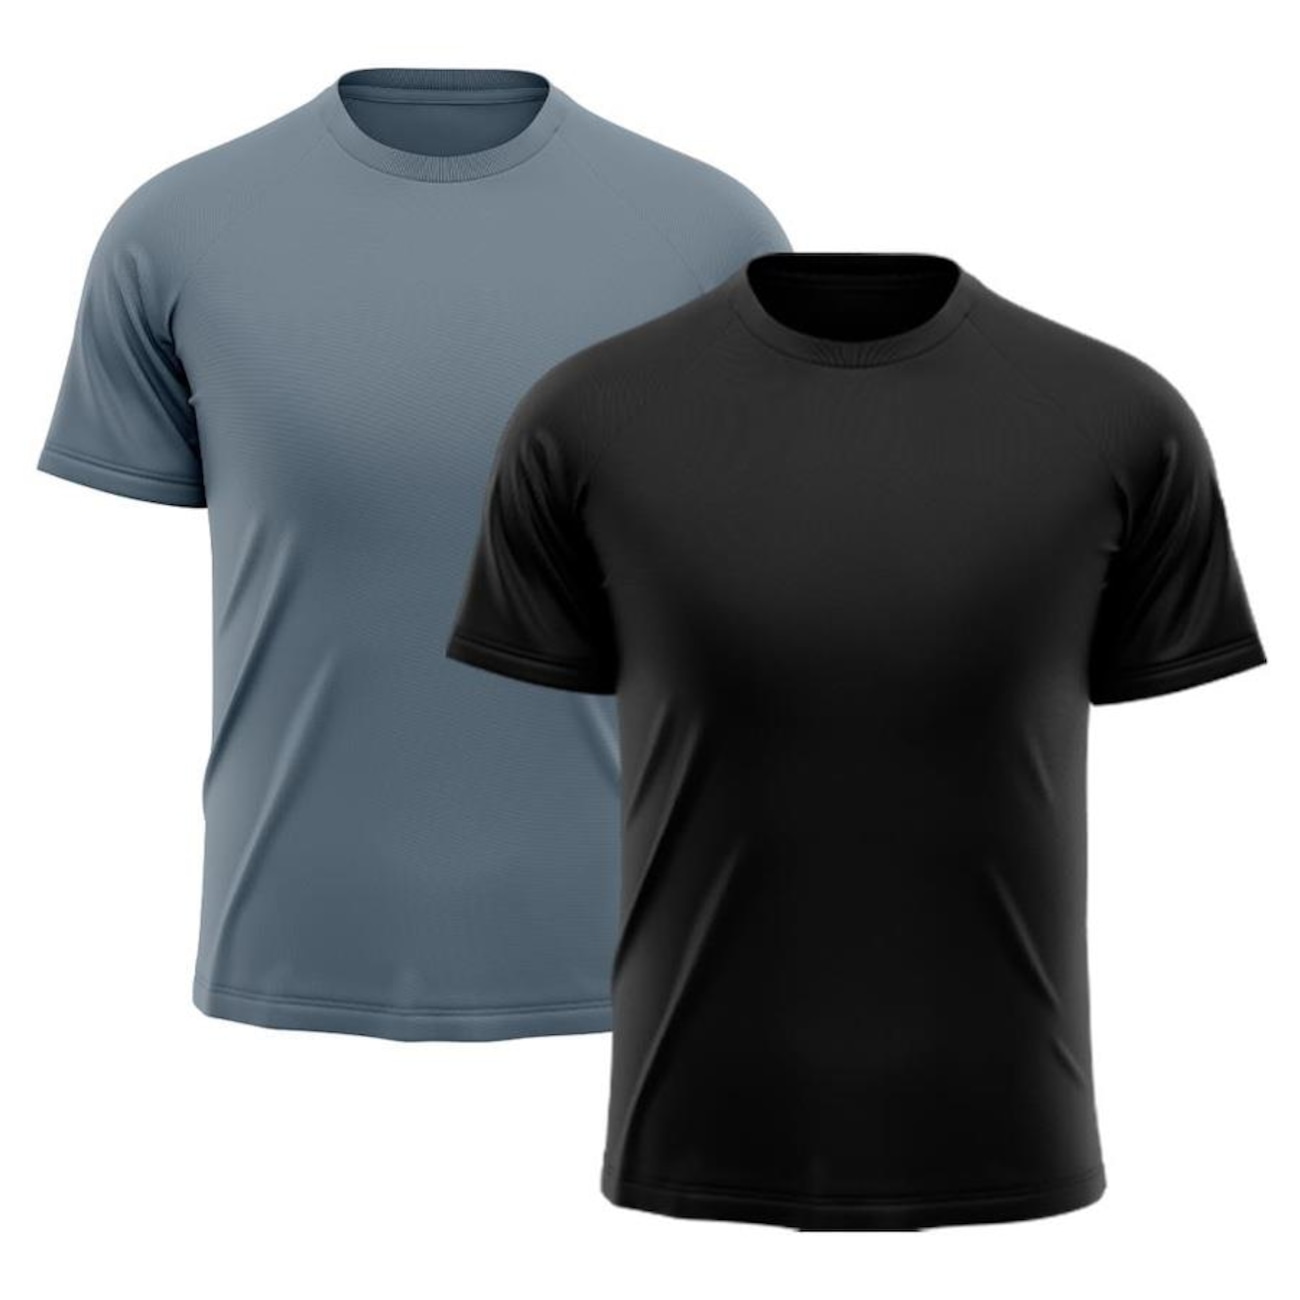 Camiseta Whats Wear Raglan Dry Fit com Proteção Solar UV - Masculina - 2 Unds